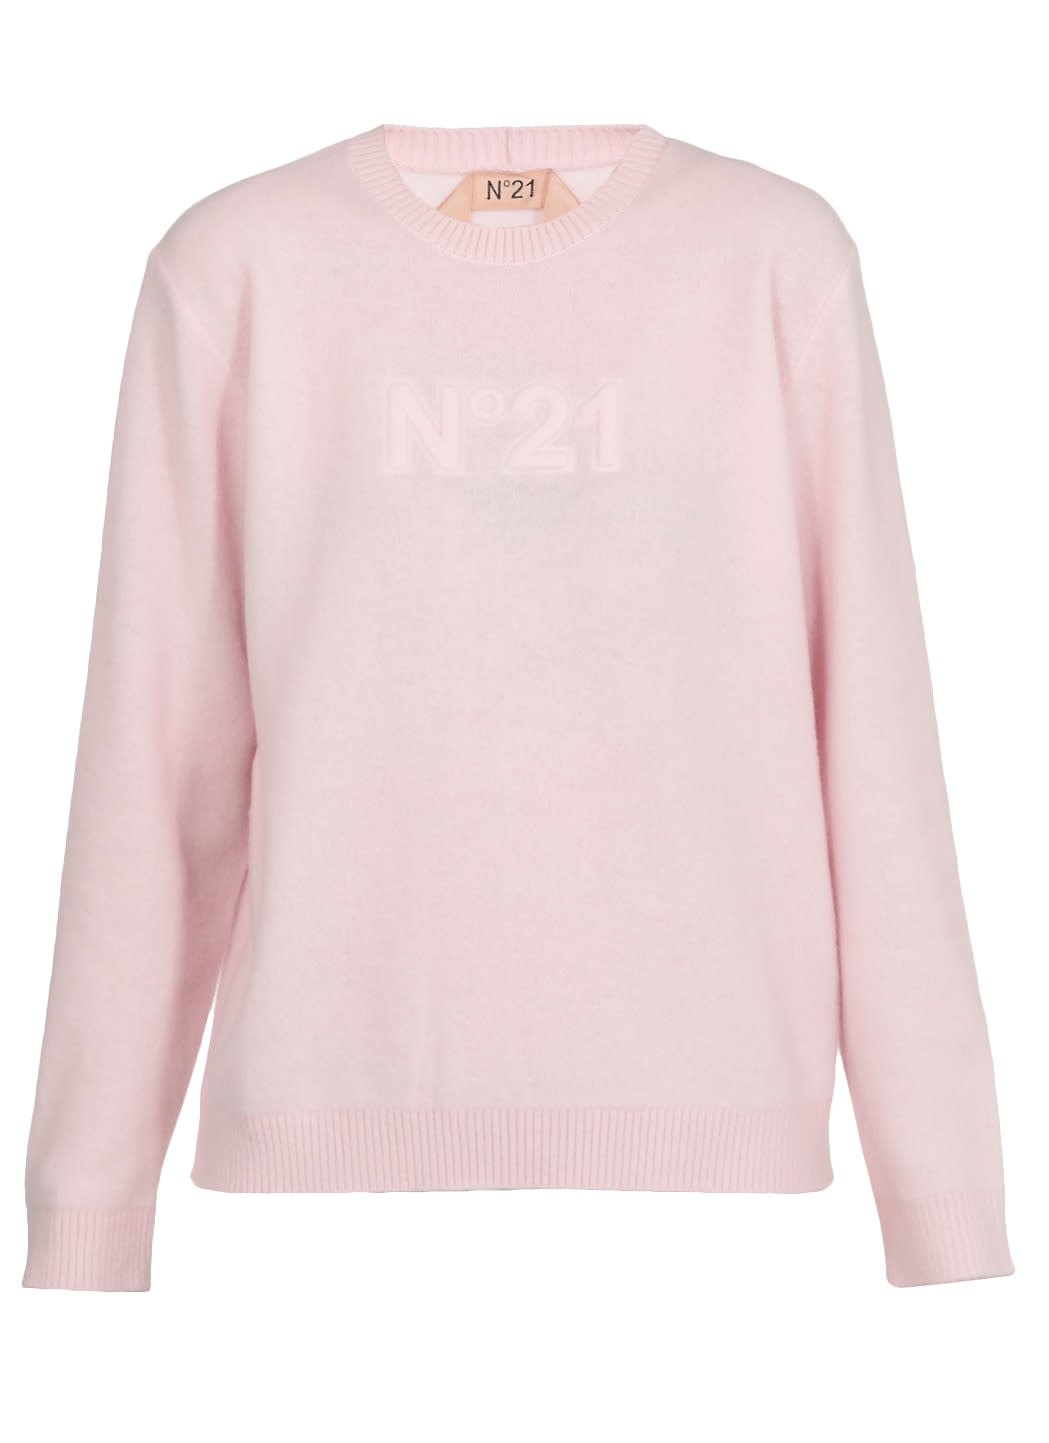 N.21 Loged Sweater